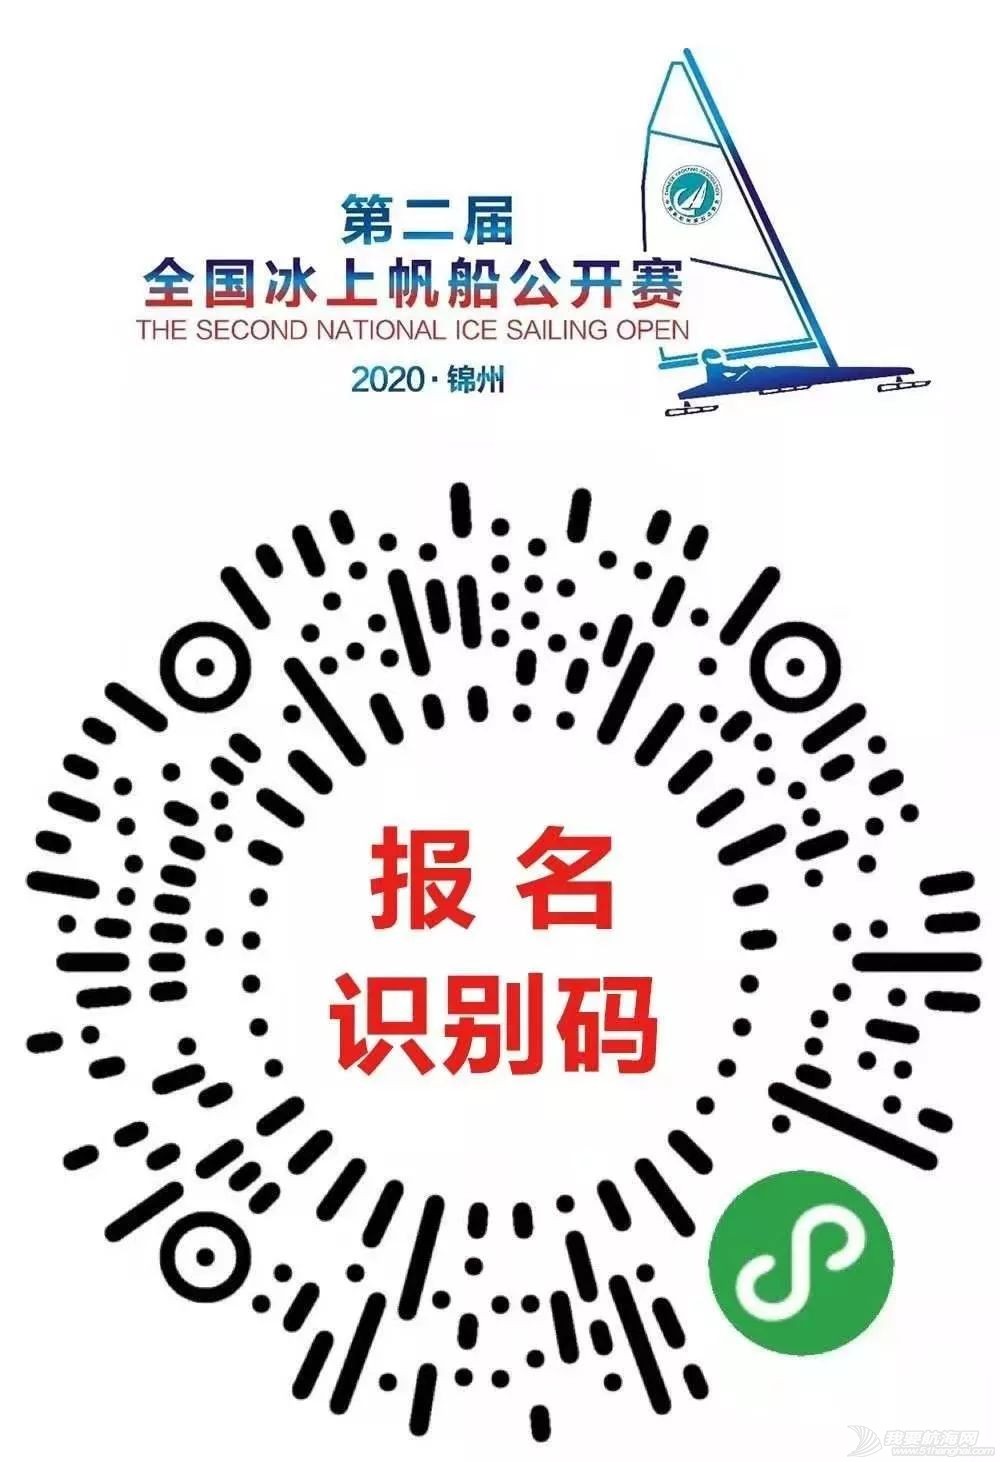 第二届全国冰上帆船公开赛将在锦州开赛了(lé)嗷(áo)!w22.jpg